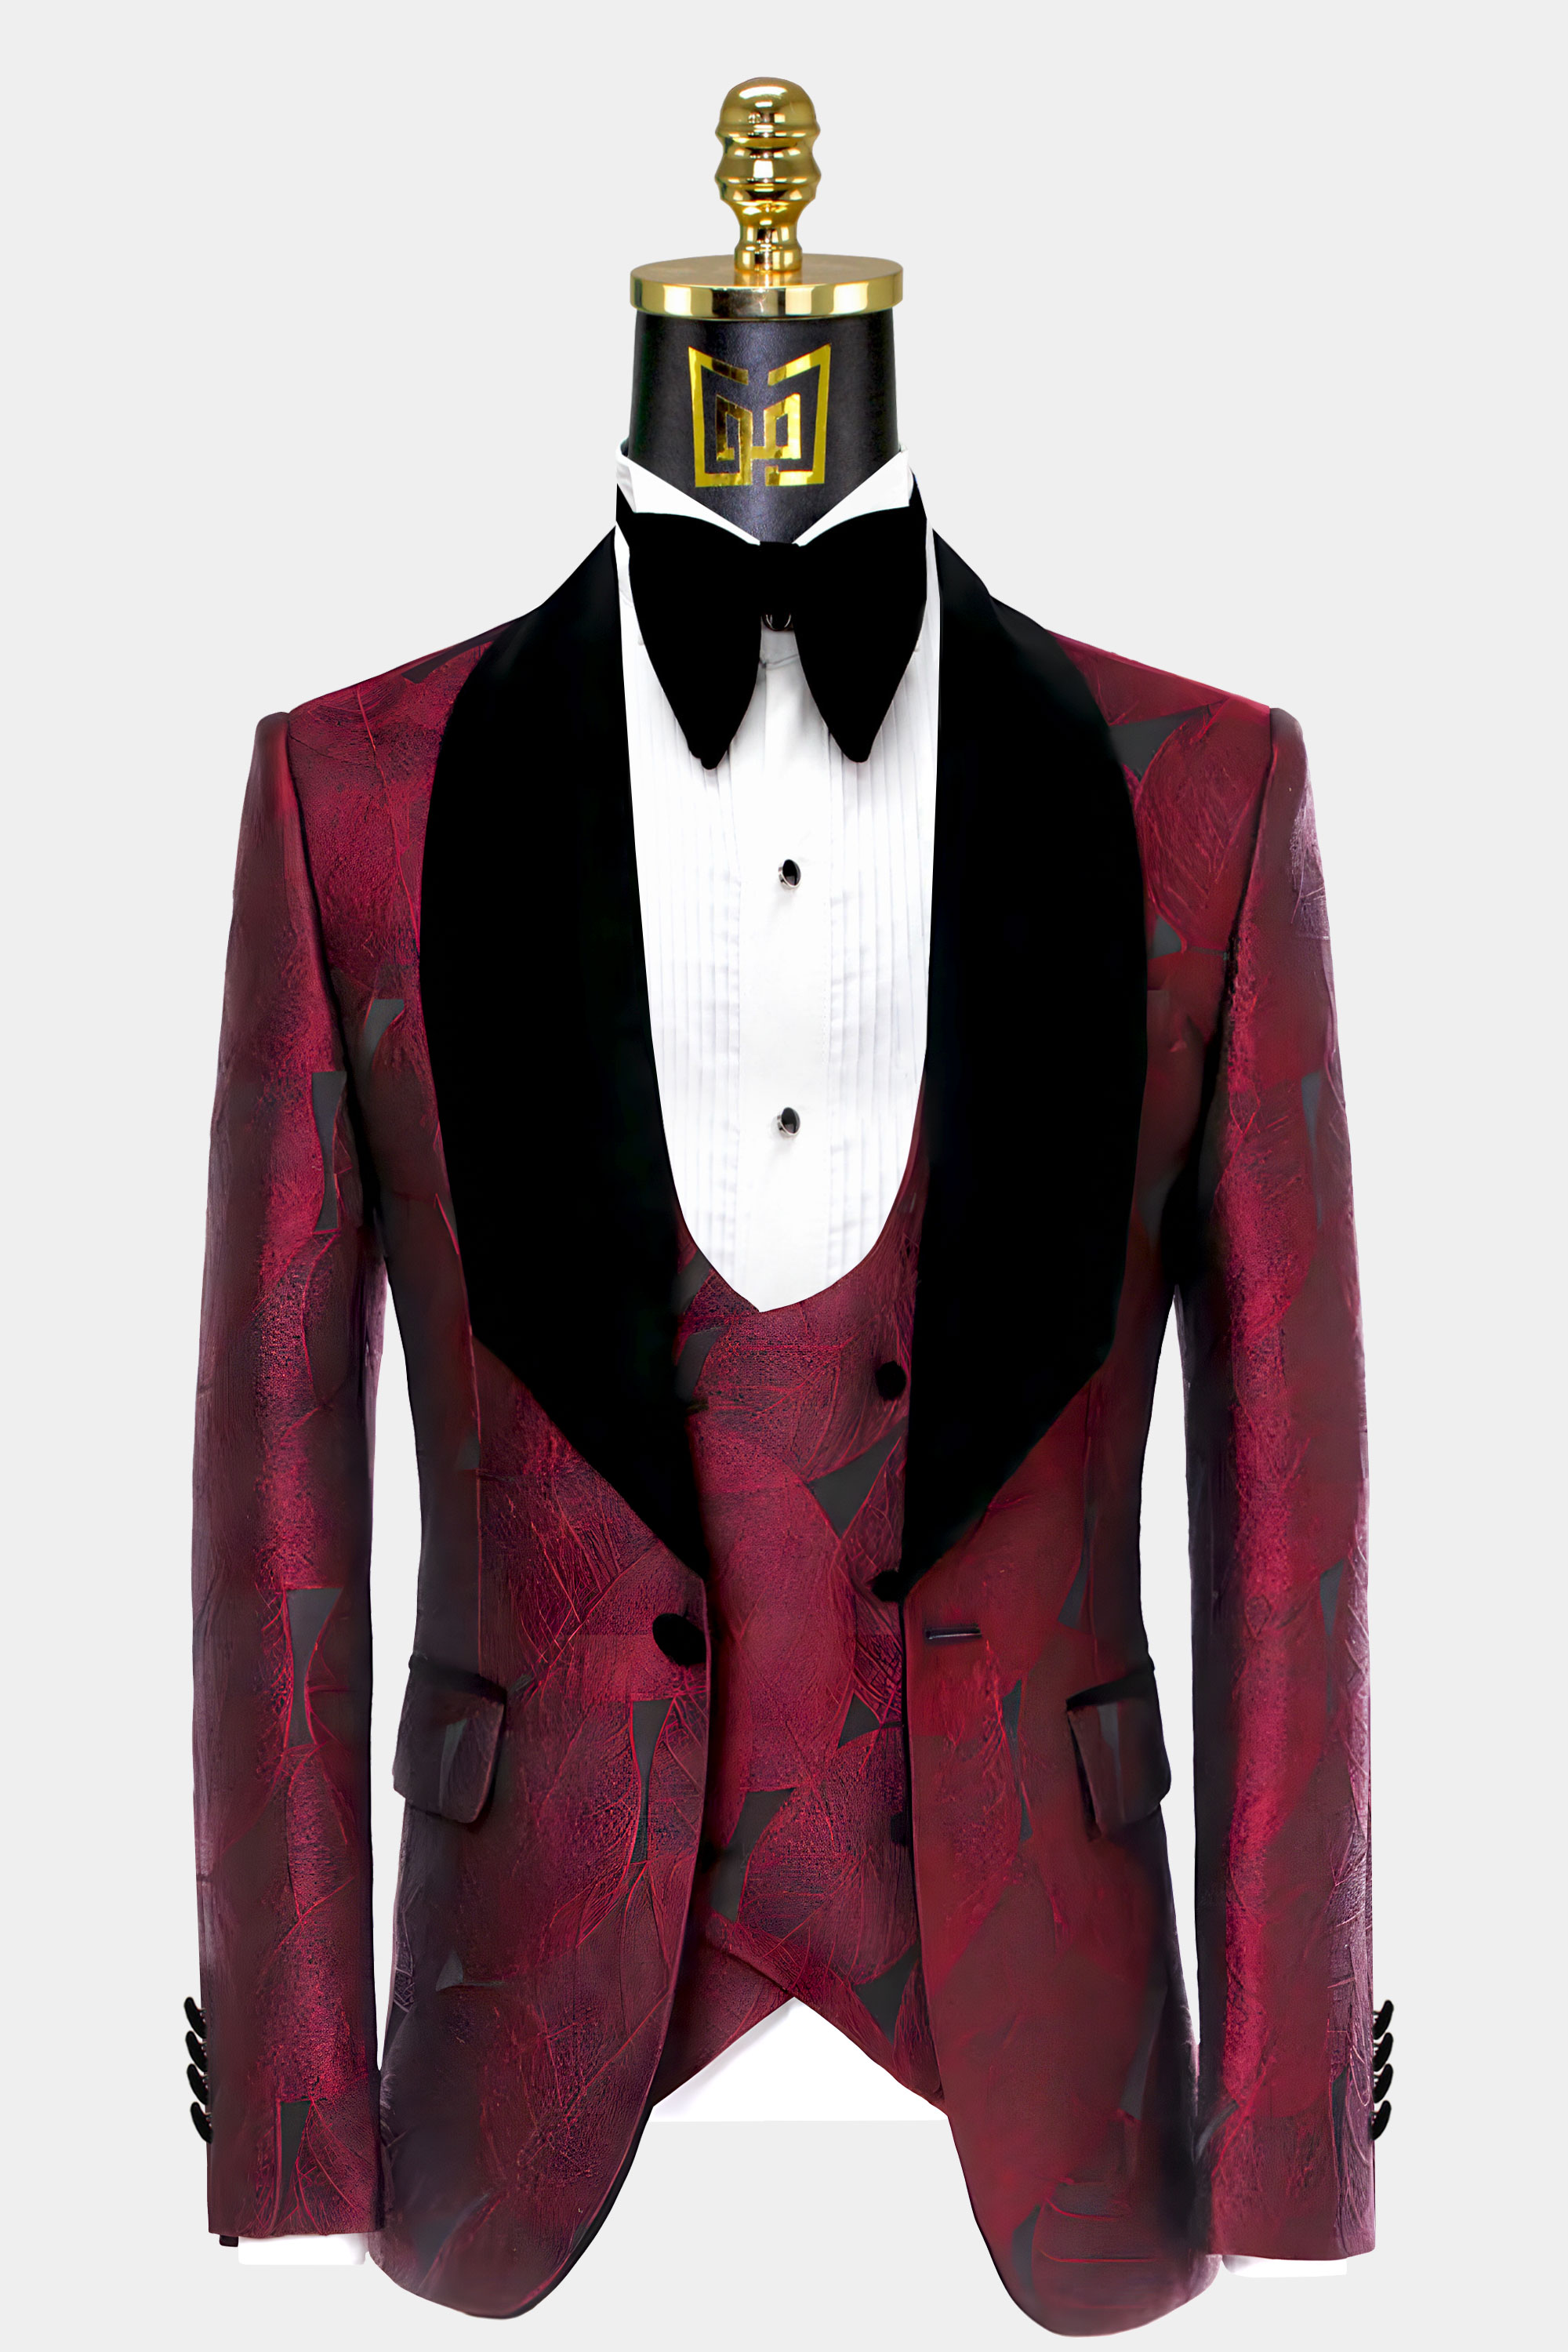 Burgundy-Wedding-Groom-Tuxedo-Suit-Jacket-from-Gentlemansguru.com